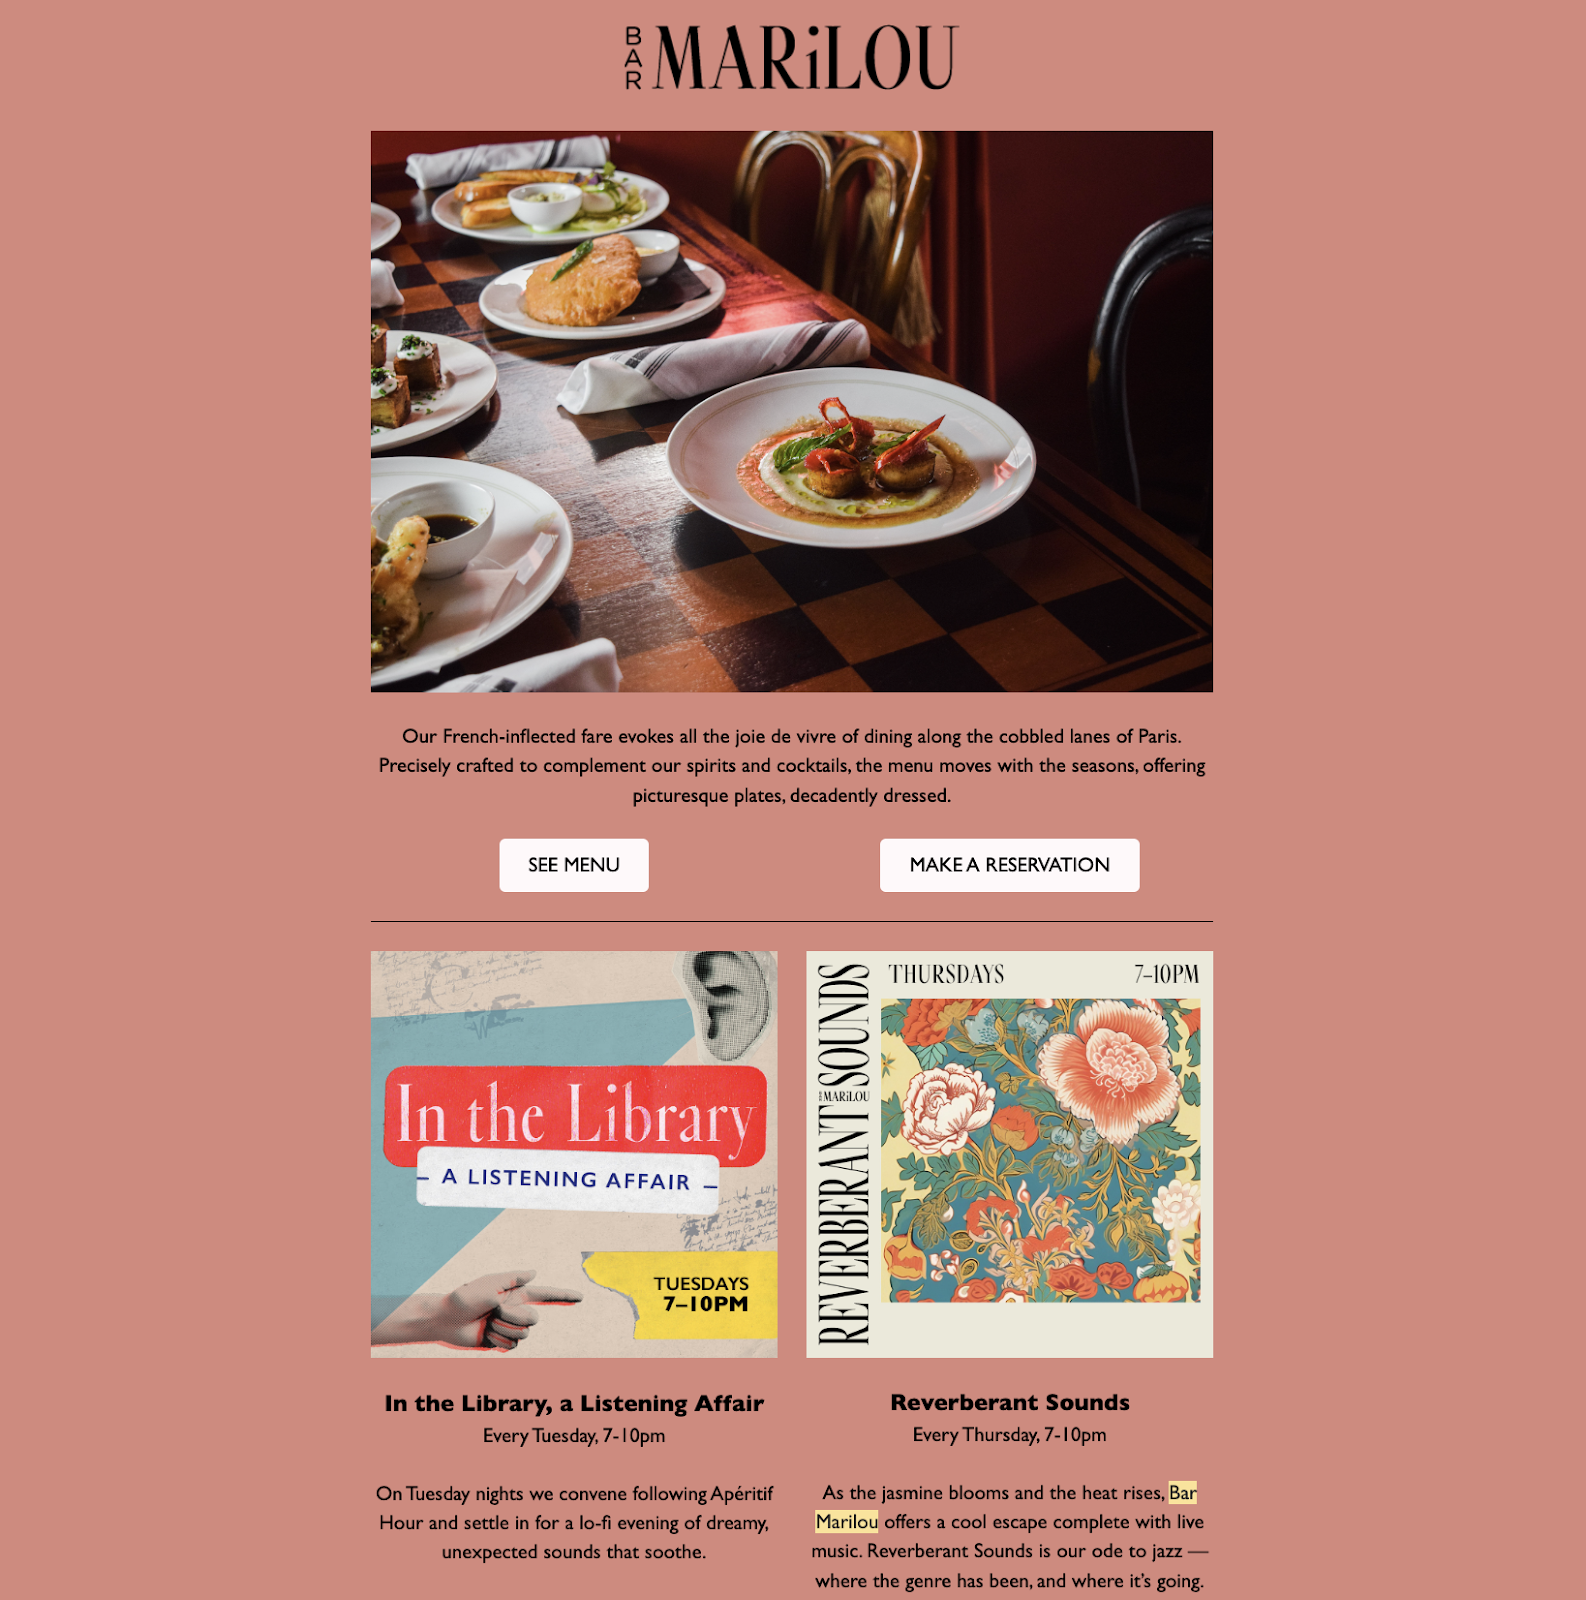 Idées de marketing pour les restaurants : une newsletter par e-mail du restaurant Bar Marilou, basé à la Nouvelle-Orléans. L'e-mail comprend une photo de haute qualité des plats servis, des boutons CTA pour voir le menu ou faire une réservation, ainsi que des informations sur deux événements à venir.